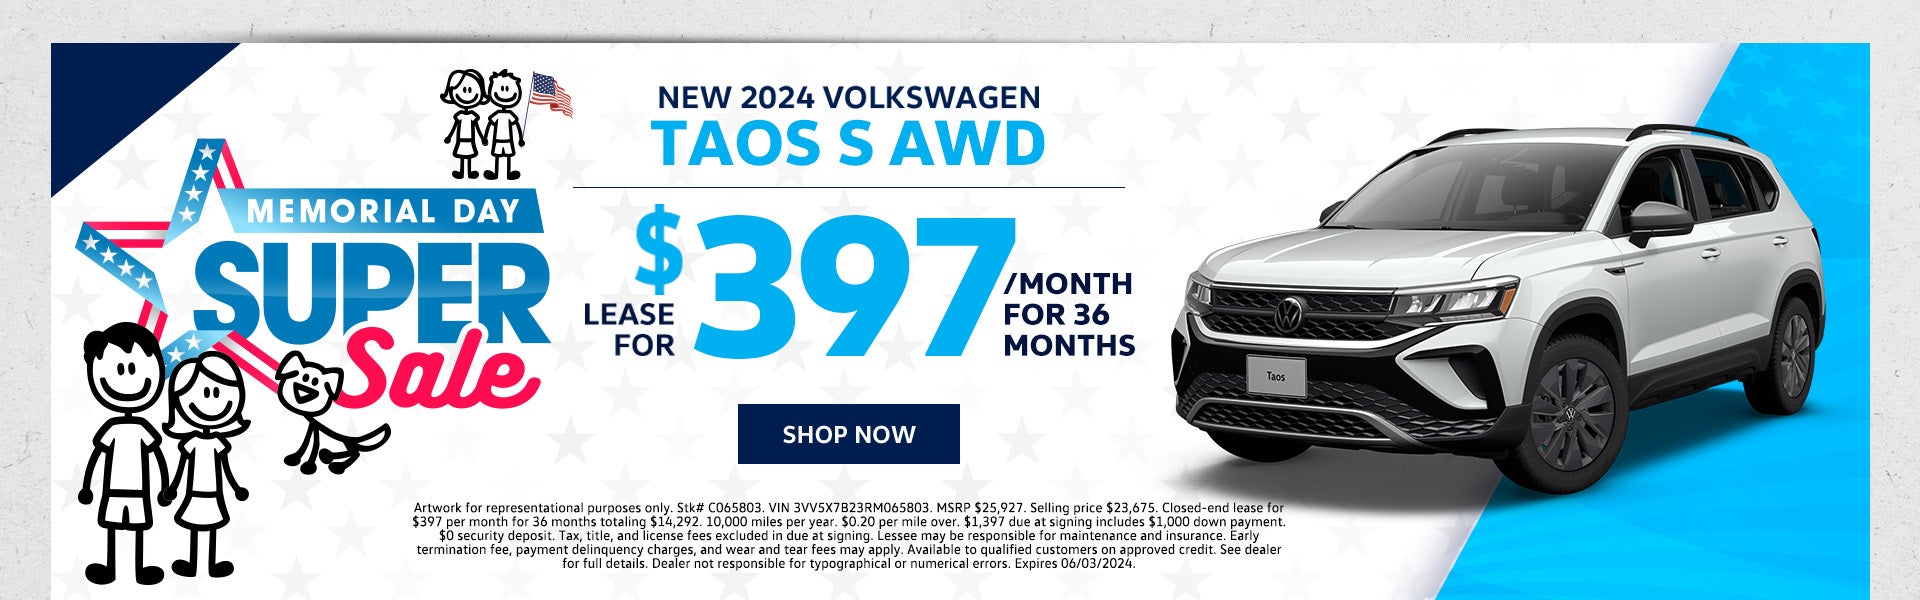 New 2024 VW Taos S AWD